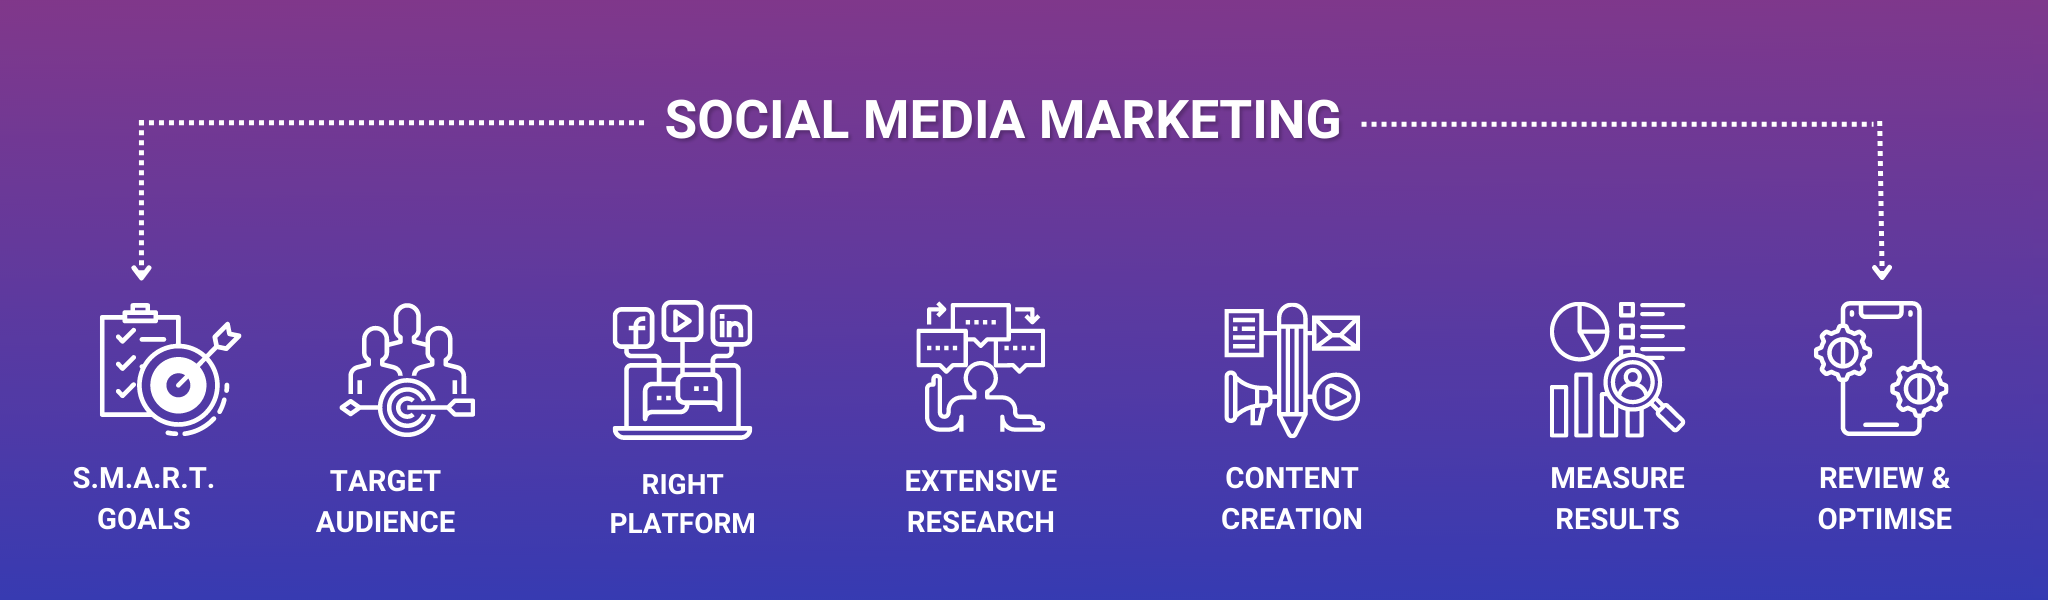 Social Media Marketing Steps